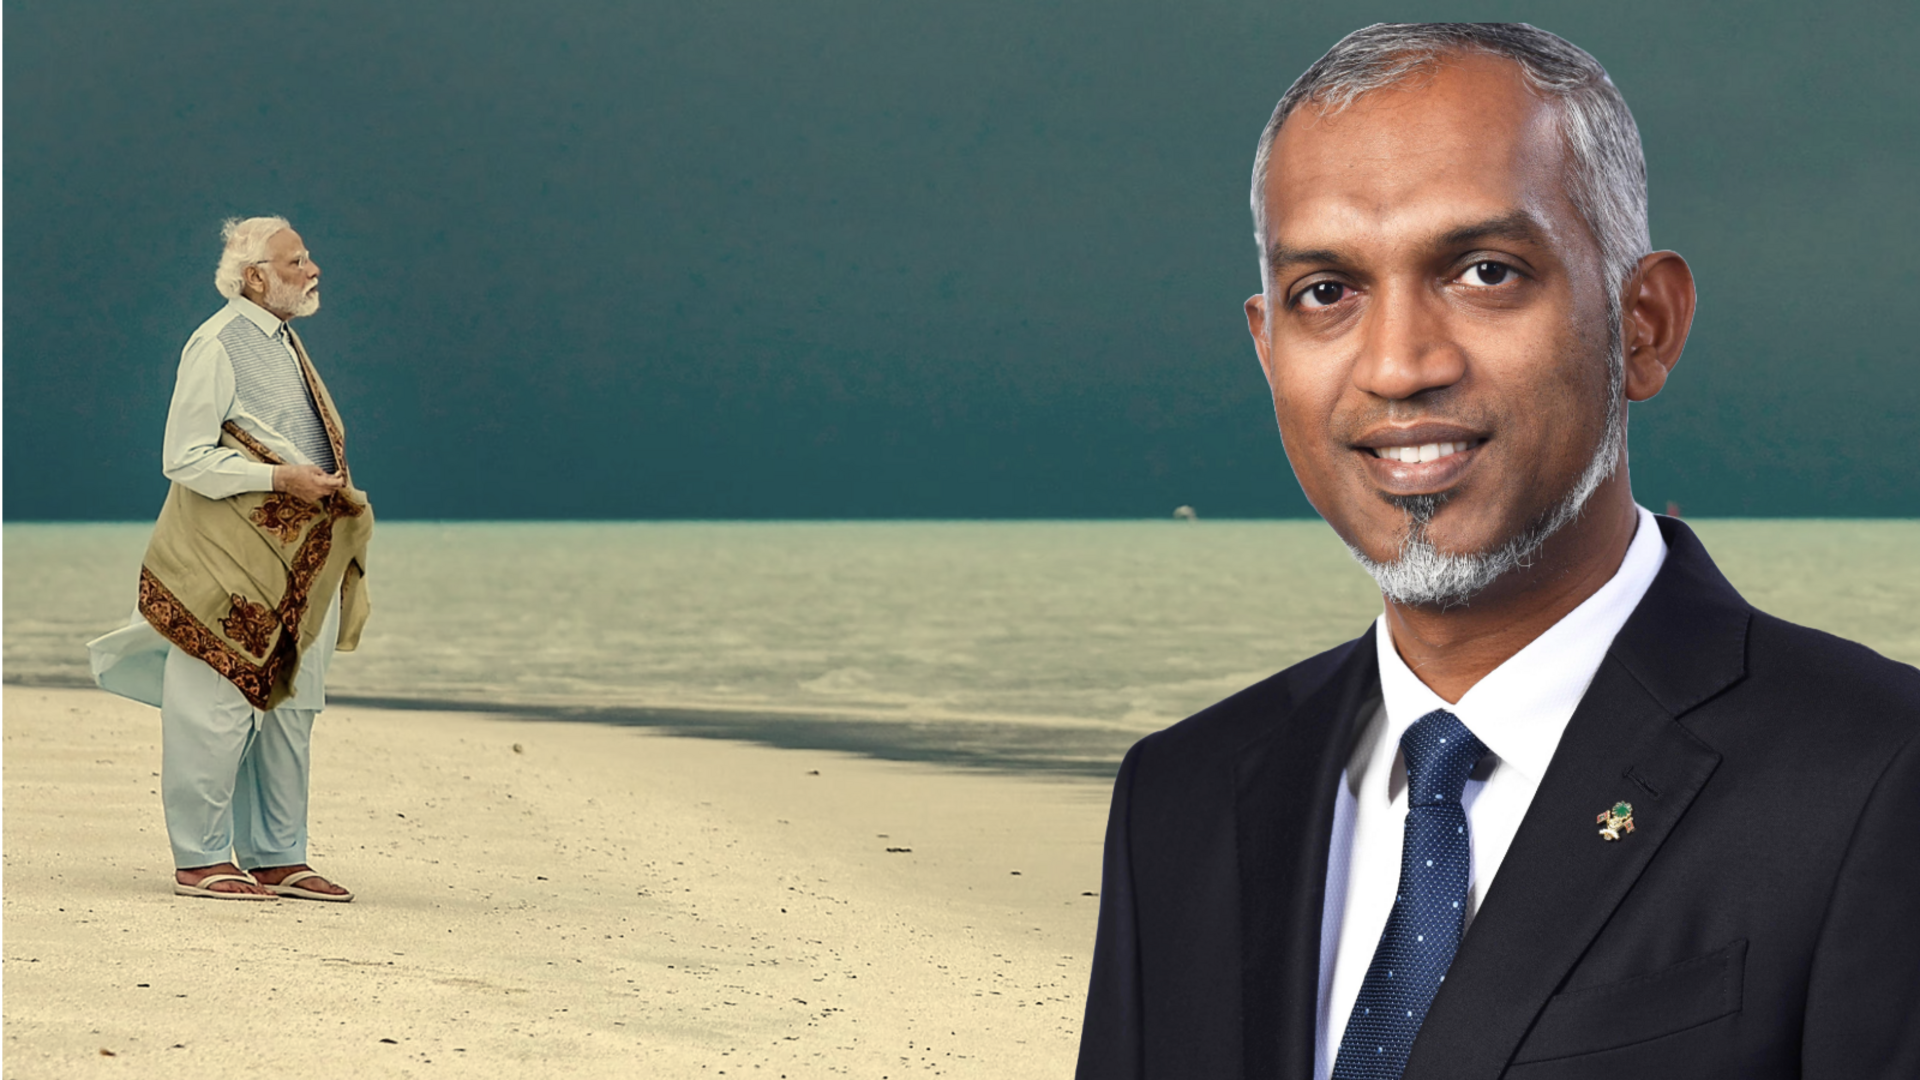 #NewsBytesExplainer: प्रधानमंत्री की लक्षद्वीप यात्रा पर मालदीव के मंत्रियों की विवादित टिप्पणी, क्या है पूरा विवाद? 